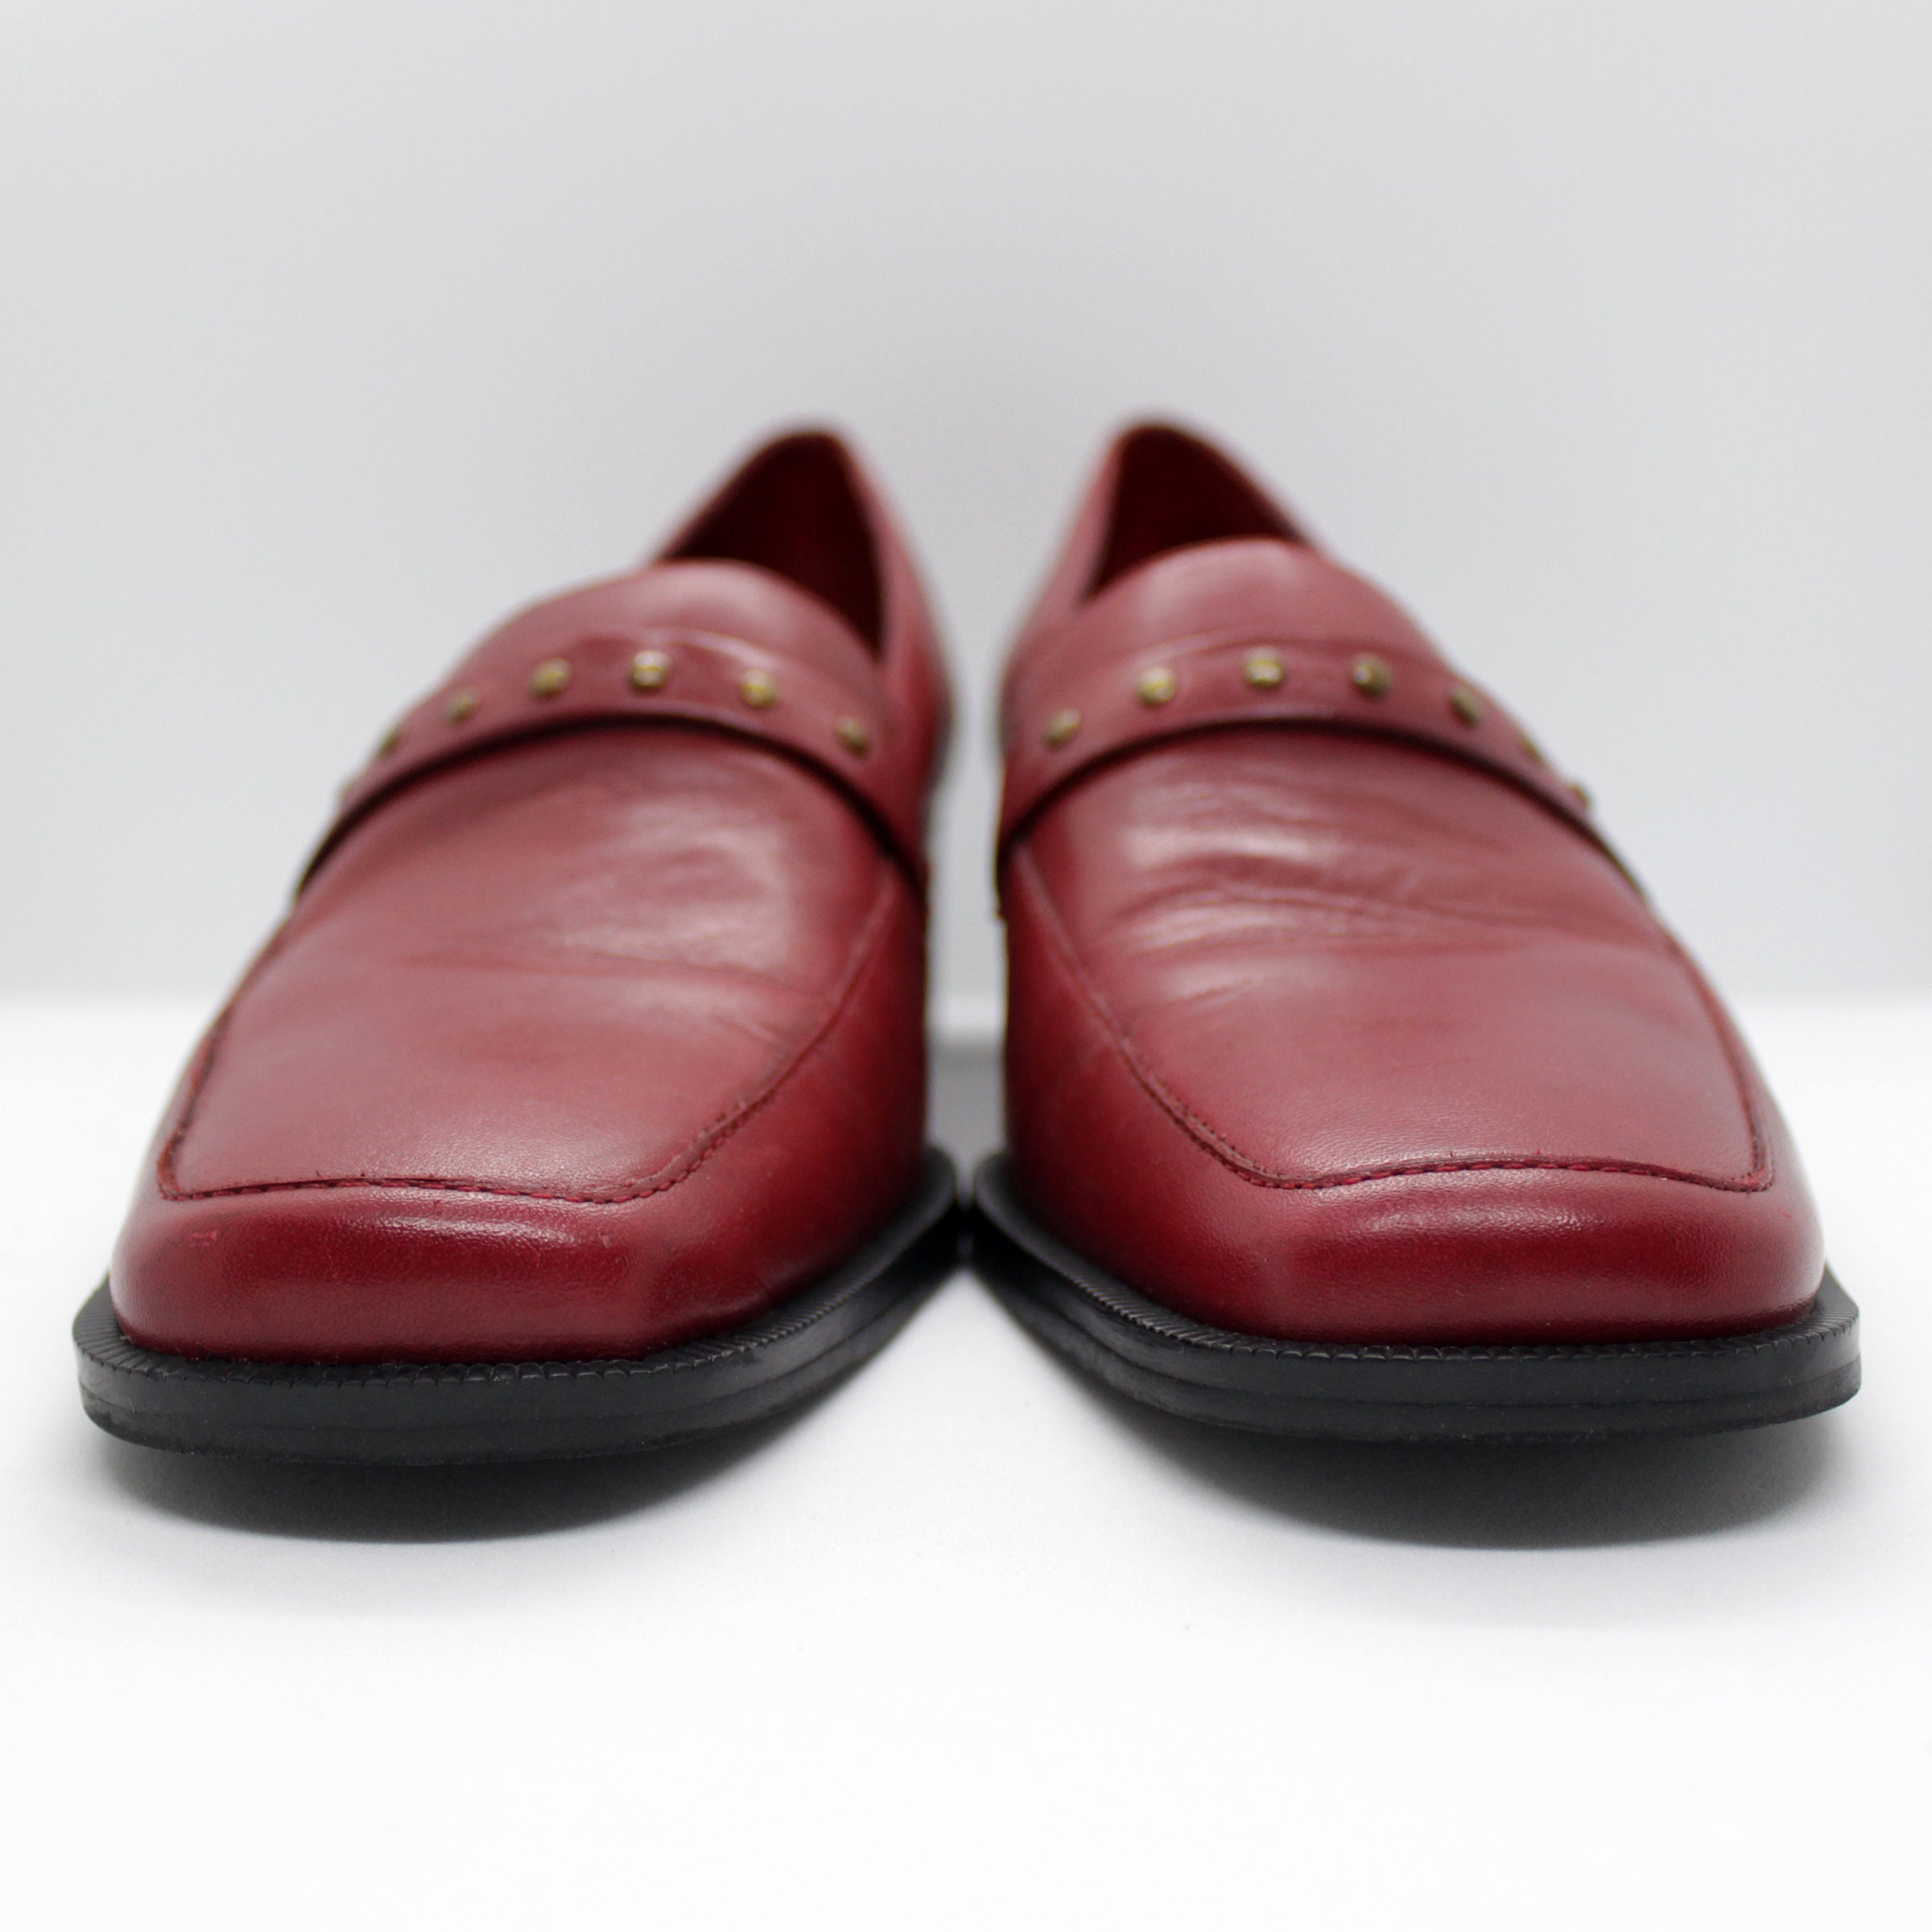 Vintage 80s Worthington Studded Leather Loafers /// Retro | Etsy